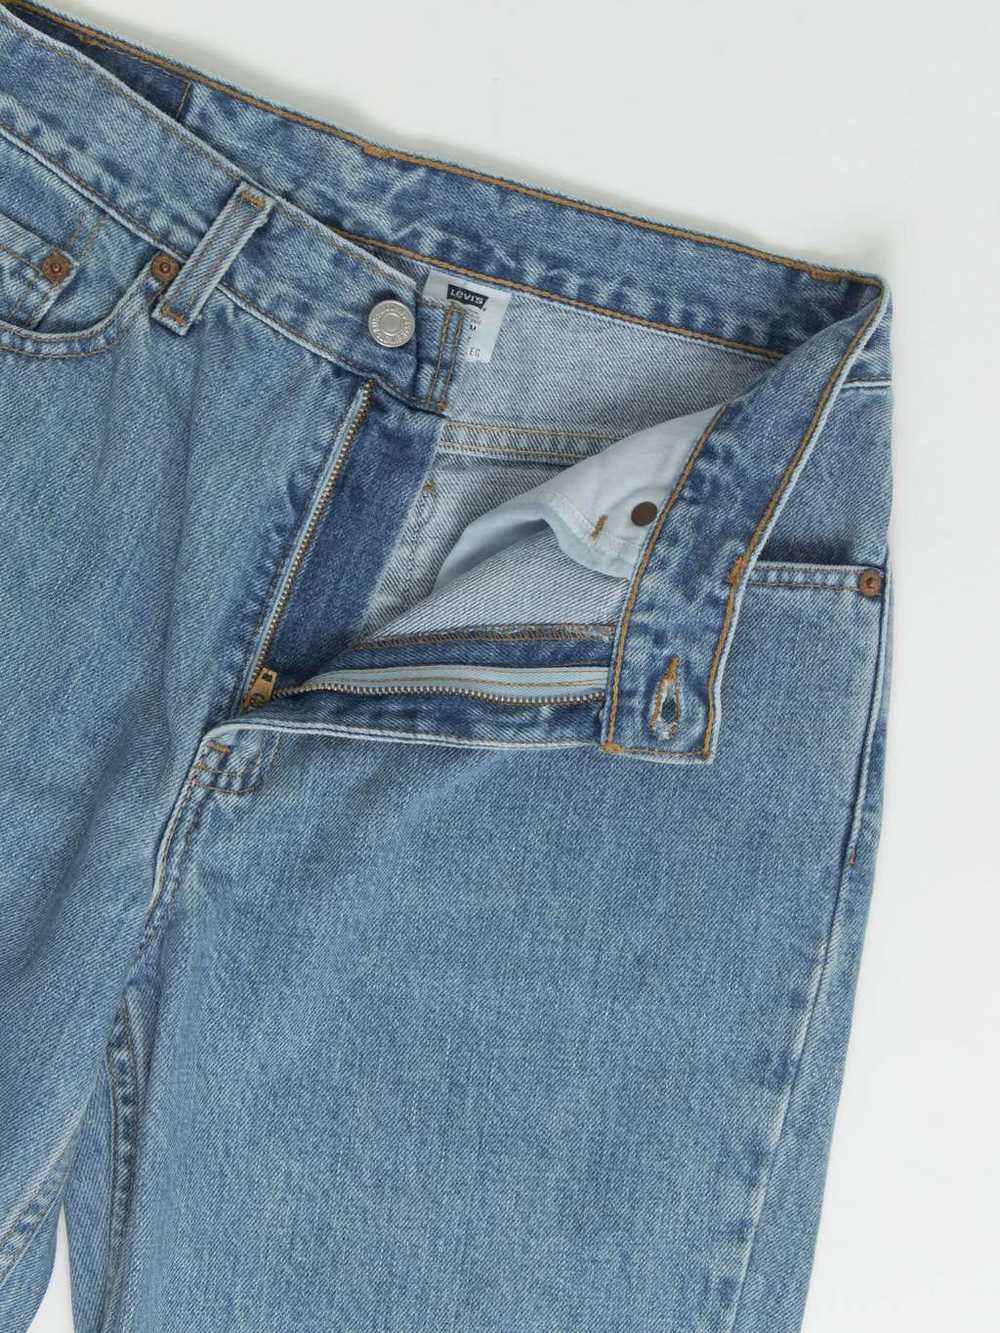 Vintage Levis 512 jeans 28 x 26 blue stonewash 90… - image 2